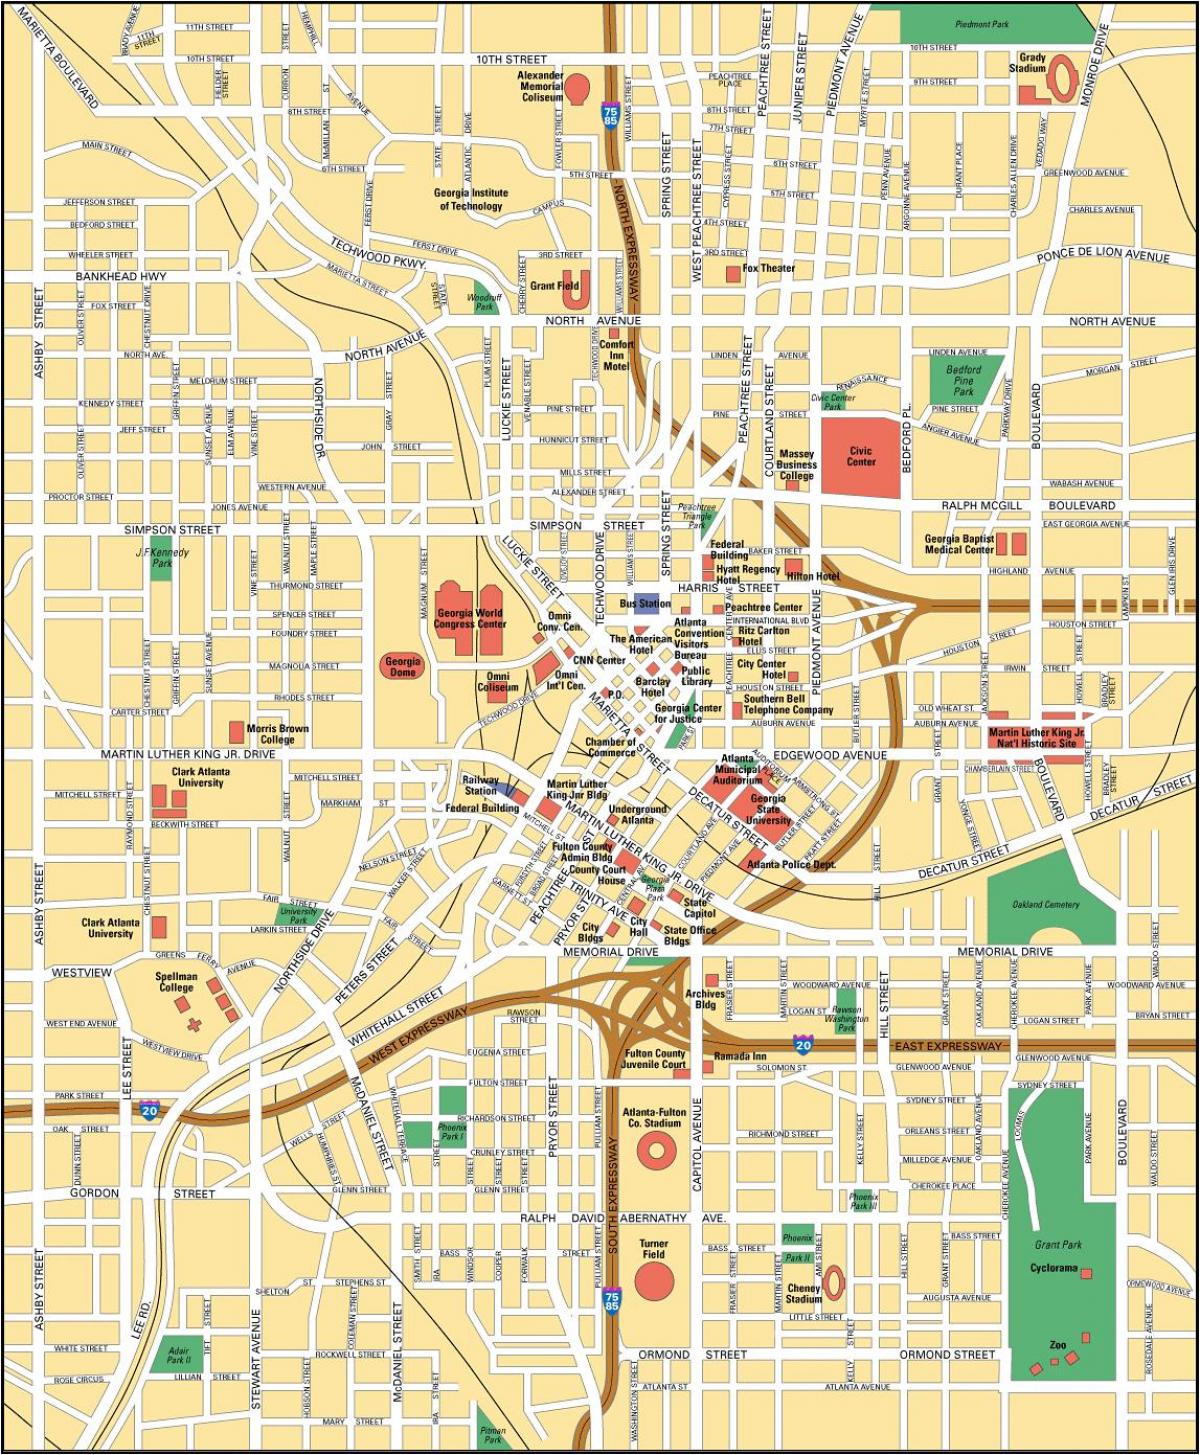 Mapa del centro de Atlanta